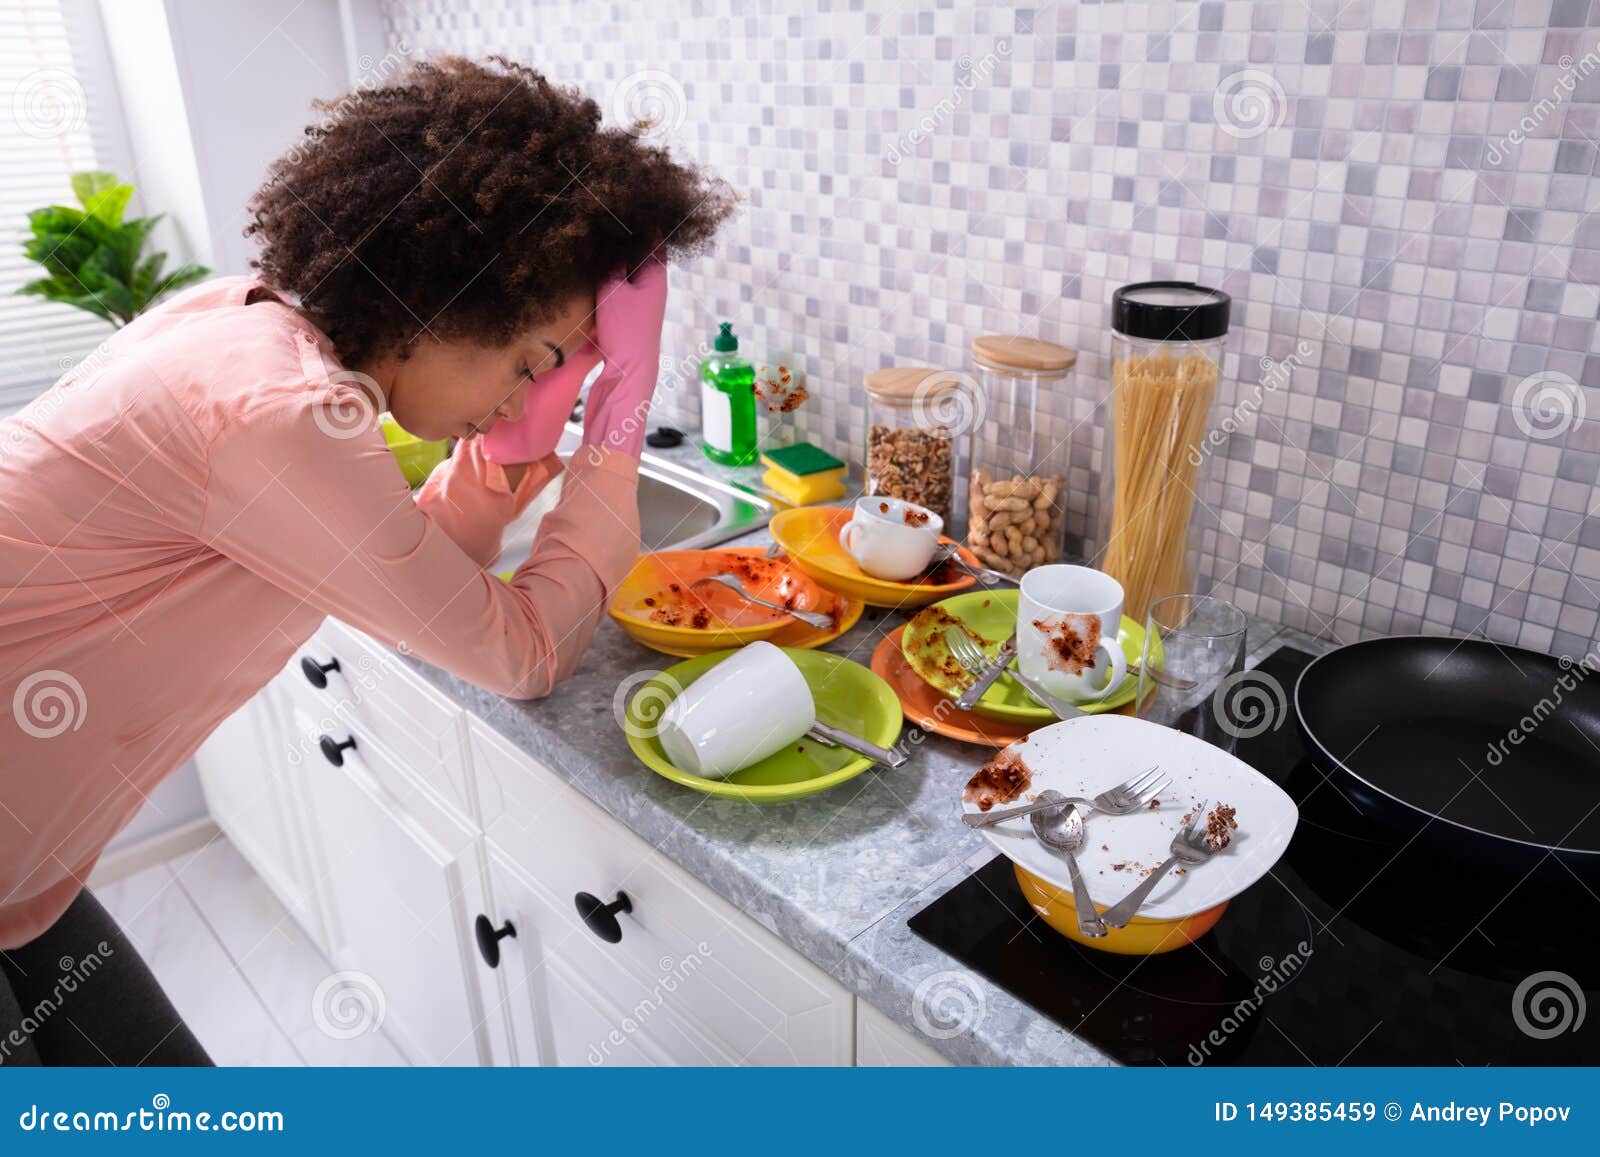 Мыть чужую посуду во сне. Грязная посуда. Девочка и грязная посуда. Человек и грязная посуда. Девушка на грязной кухне.